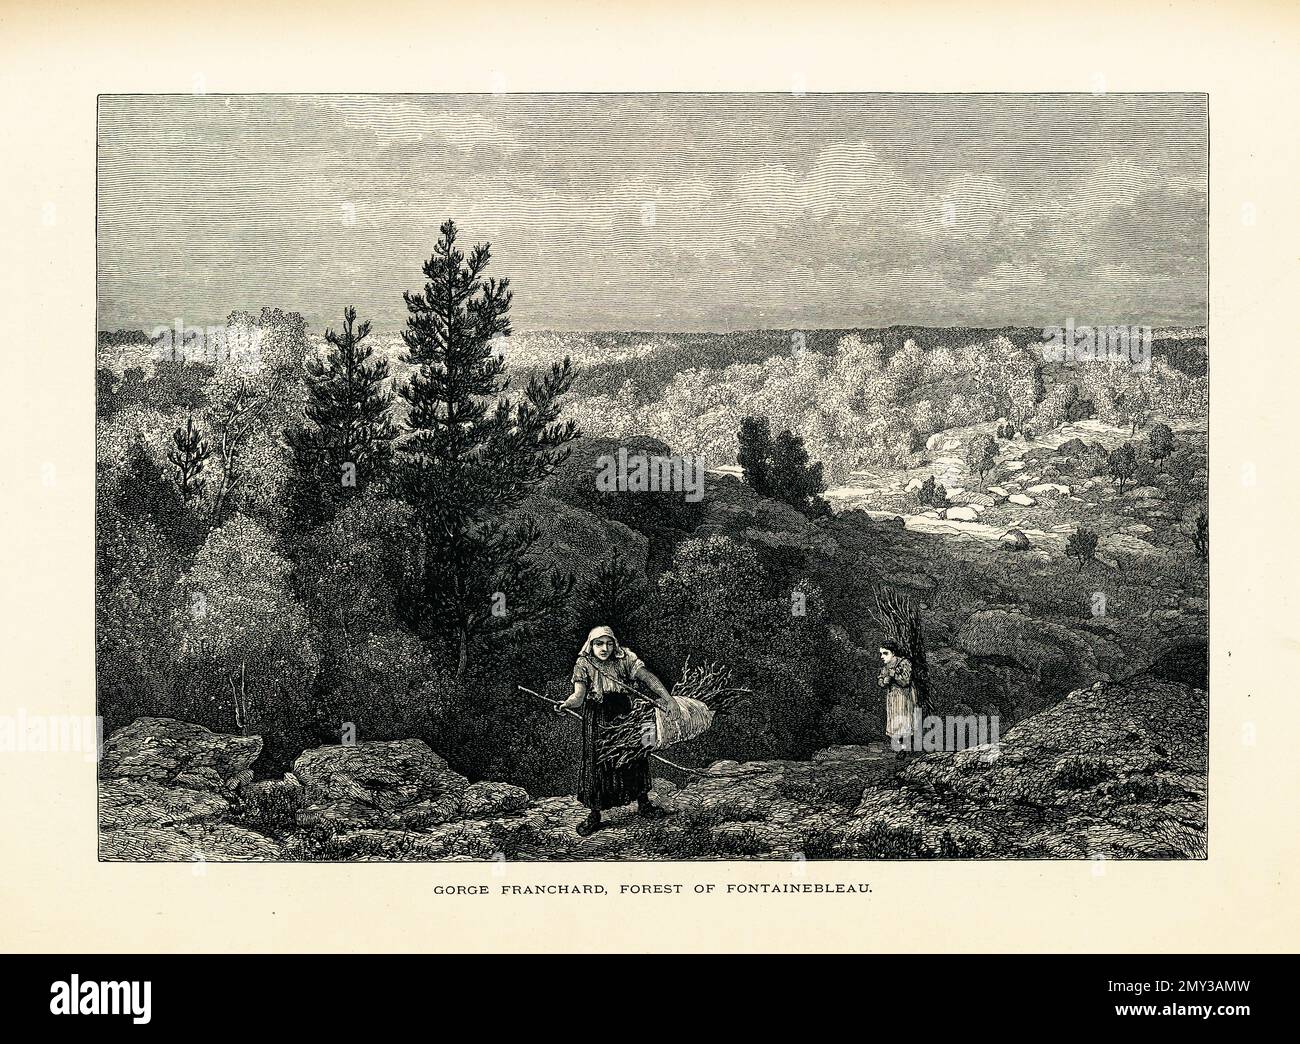 Antica illustrazione di Gorge Franchard, una famosa attrazione nella foresta di Fontainebleau, Francia. Incisione pubblicata in picturesque Europe, Vol. IO Foto Stock